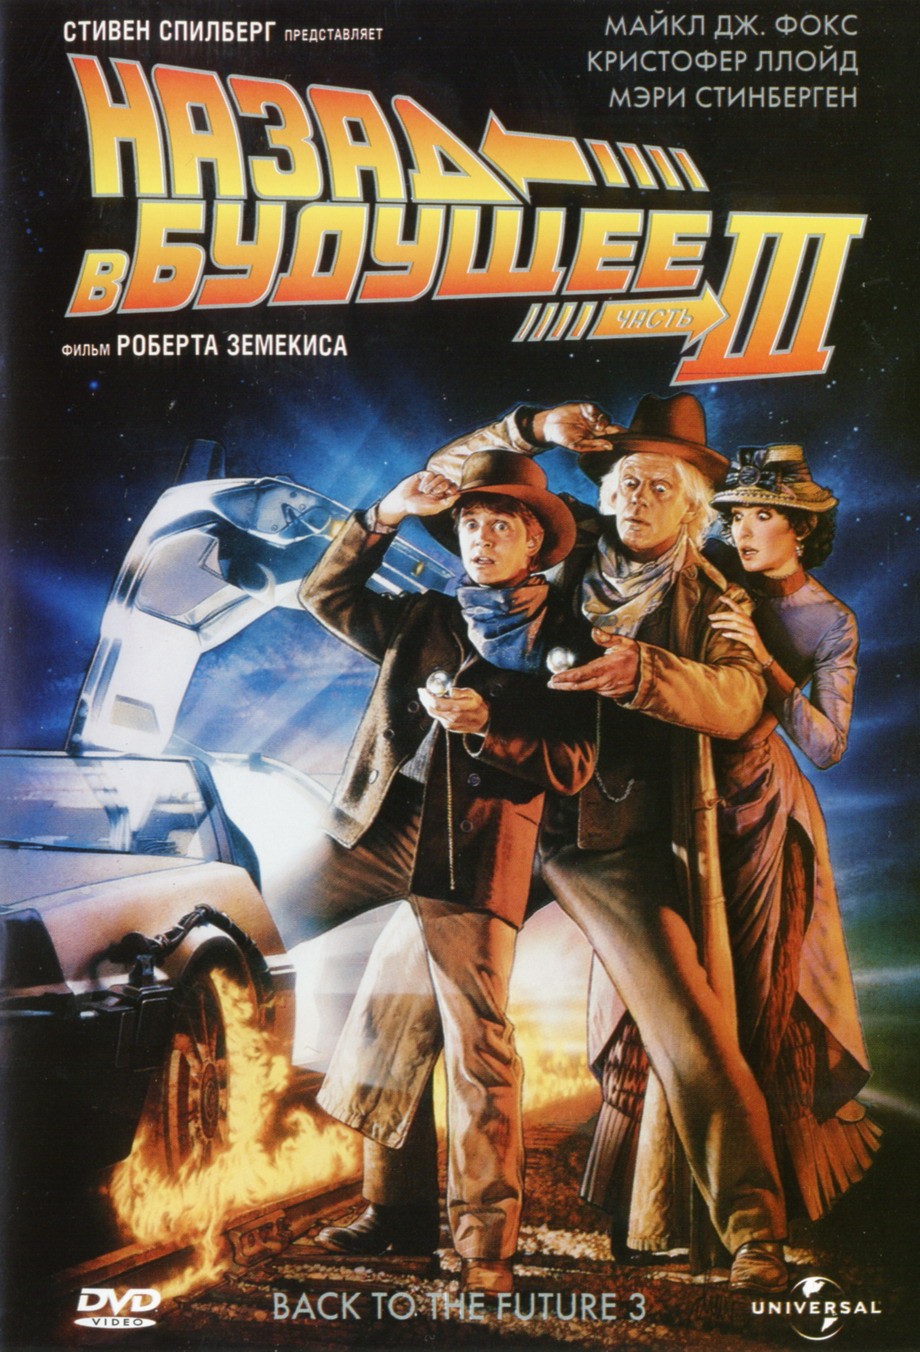 Смотреть кино онлайн Назад в будущее: Фильм 3/Back to the future 3 (1990)